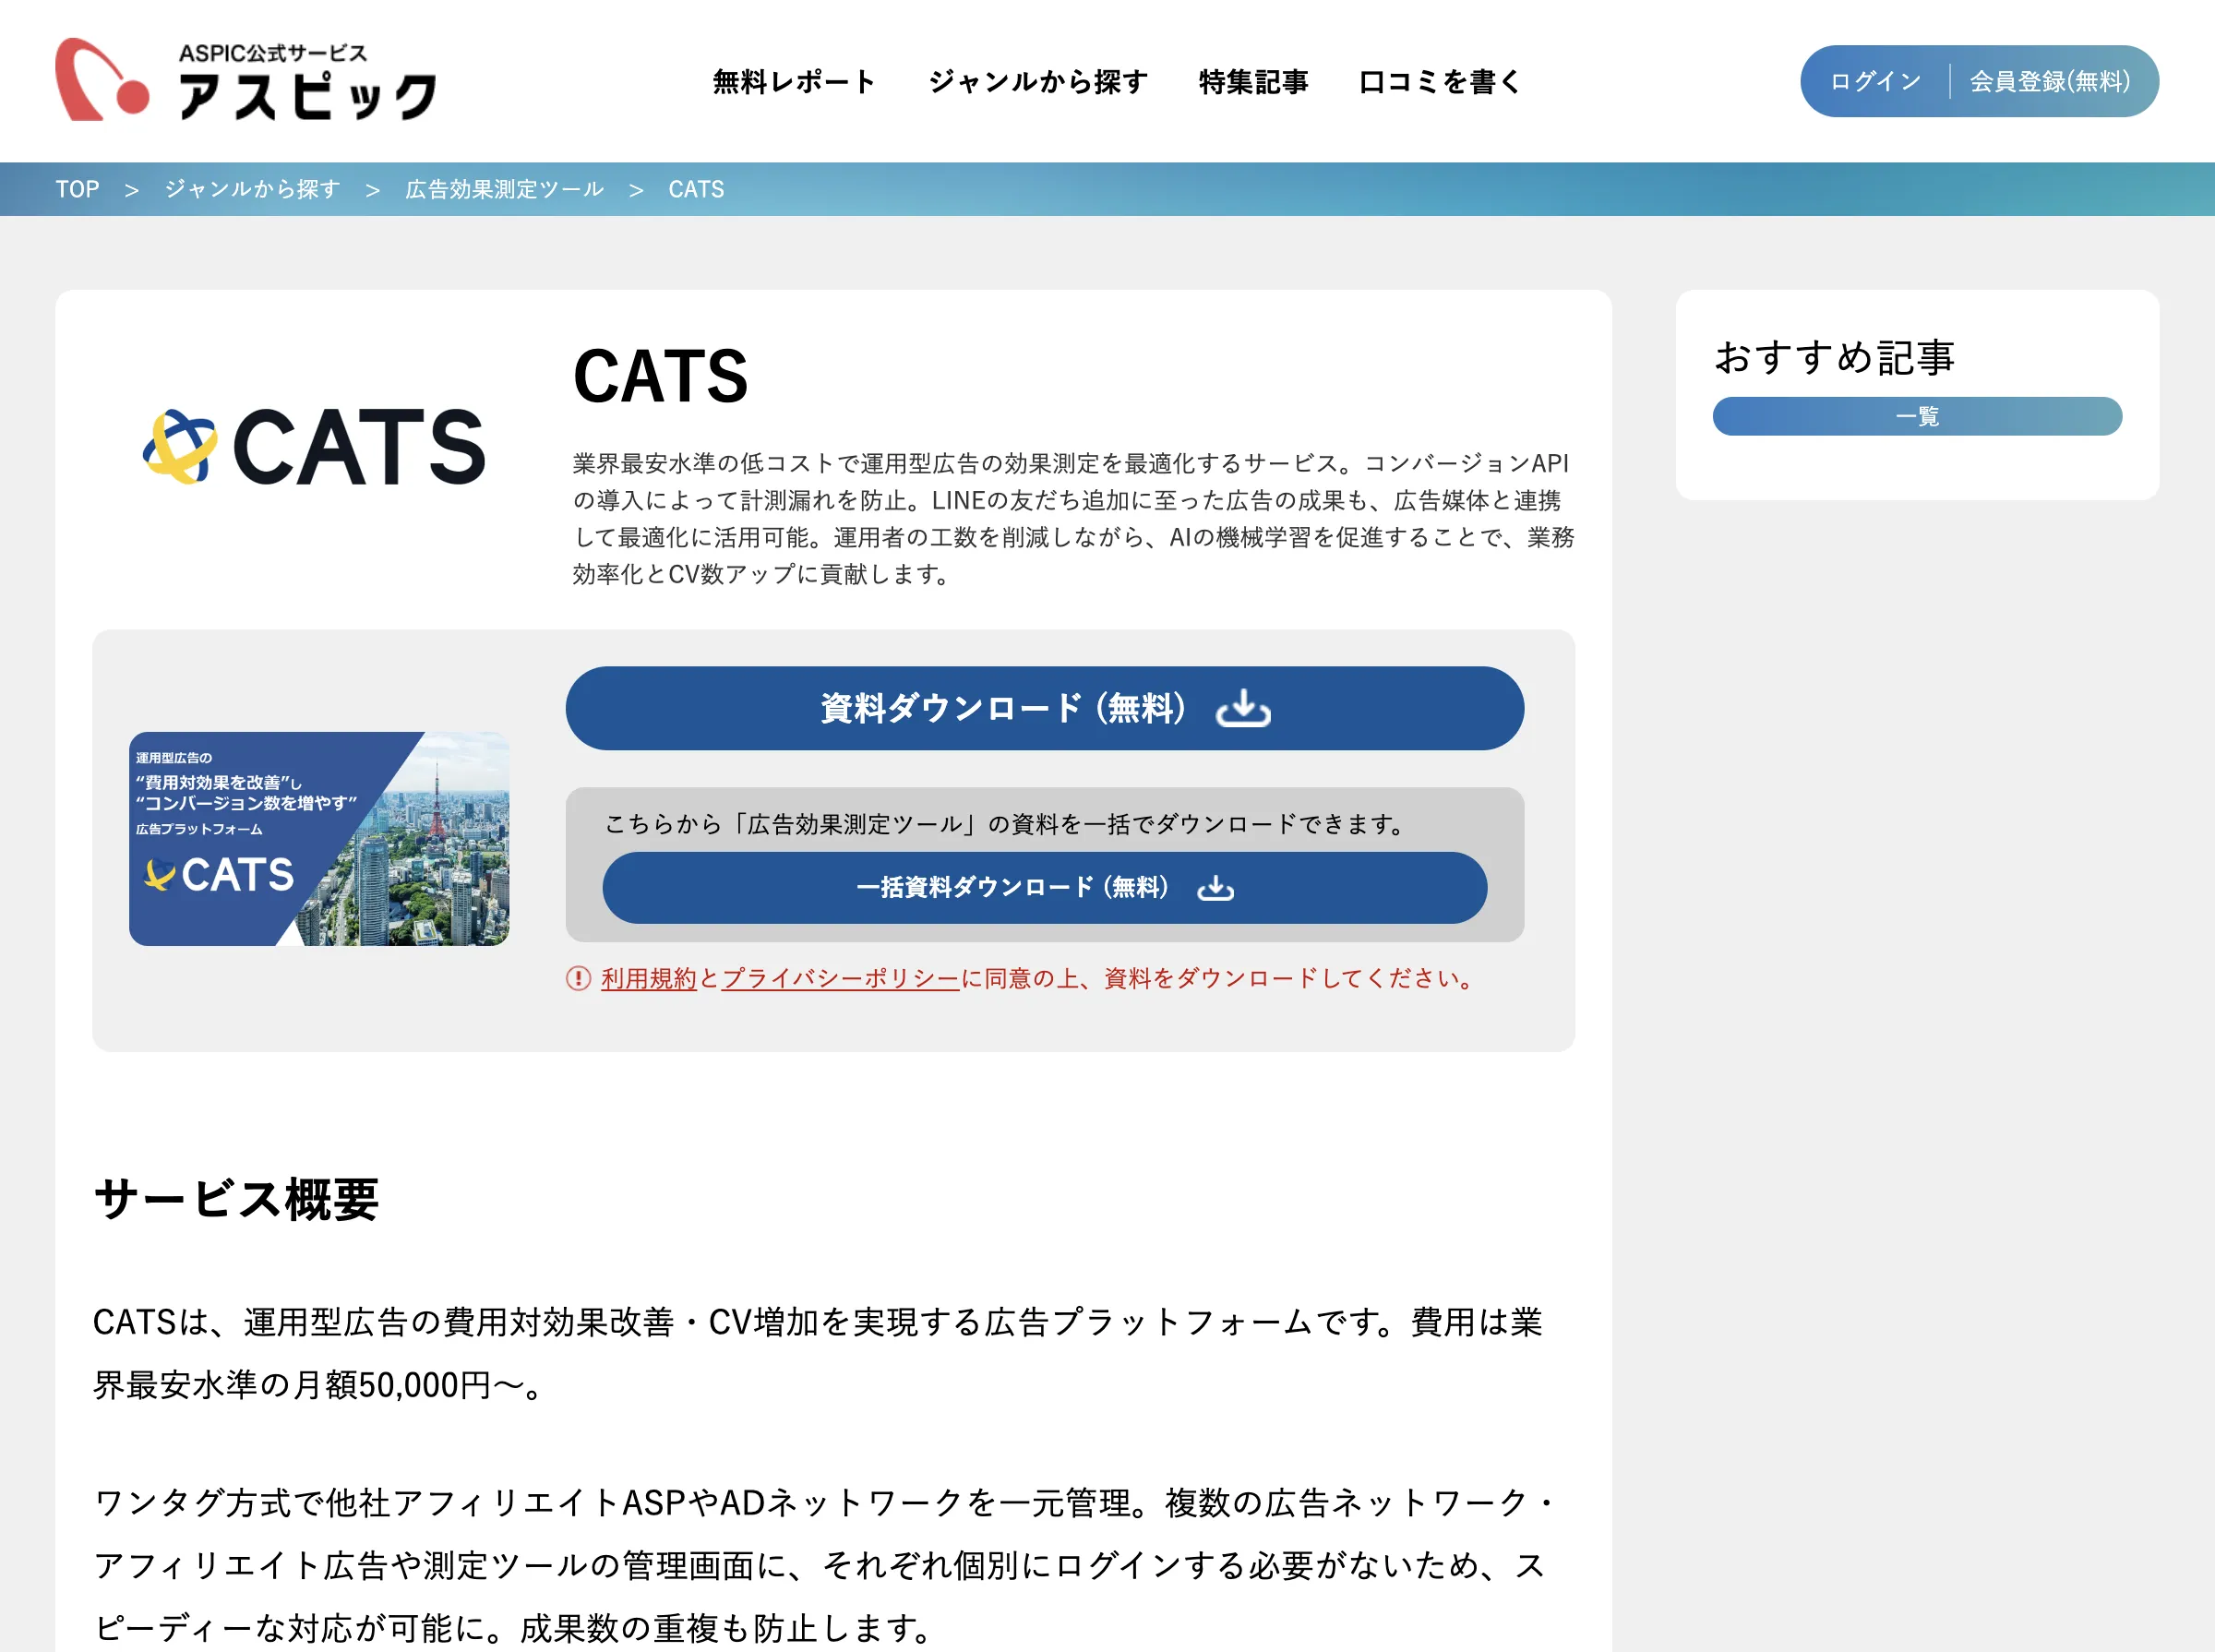 CATS(CATS株式会社)